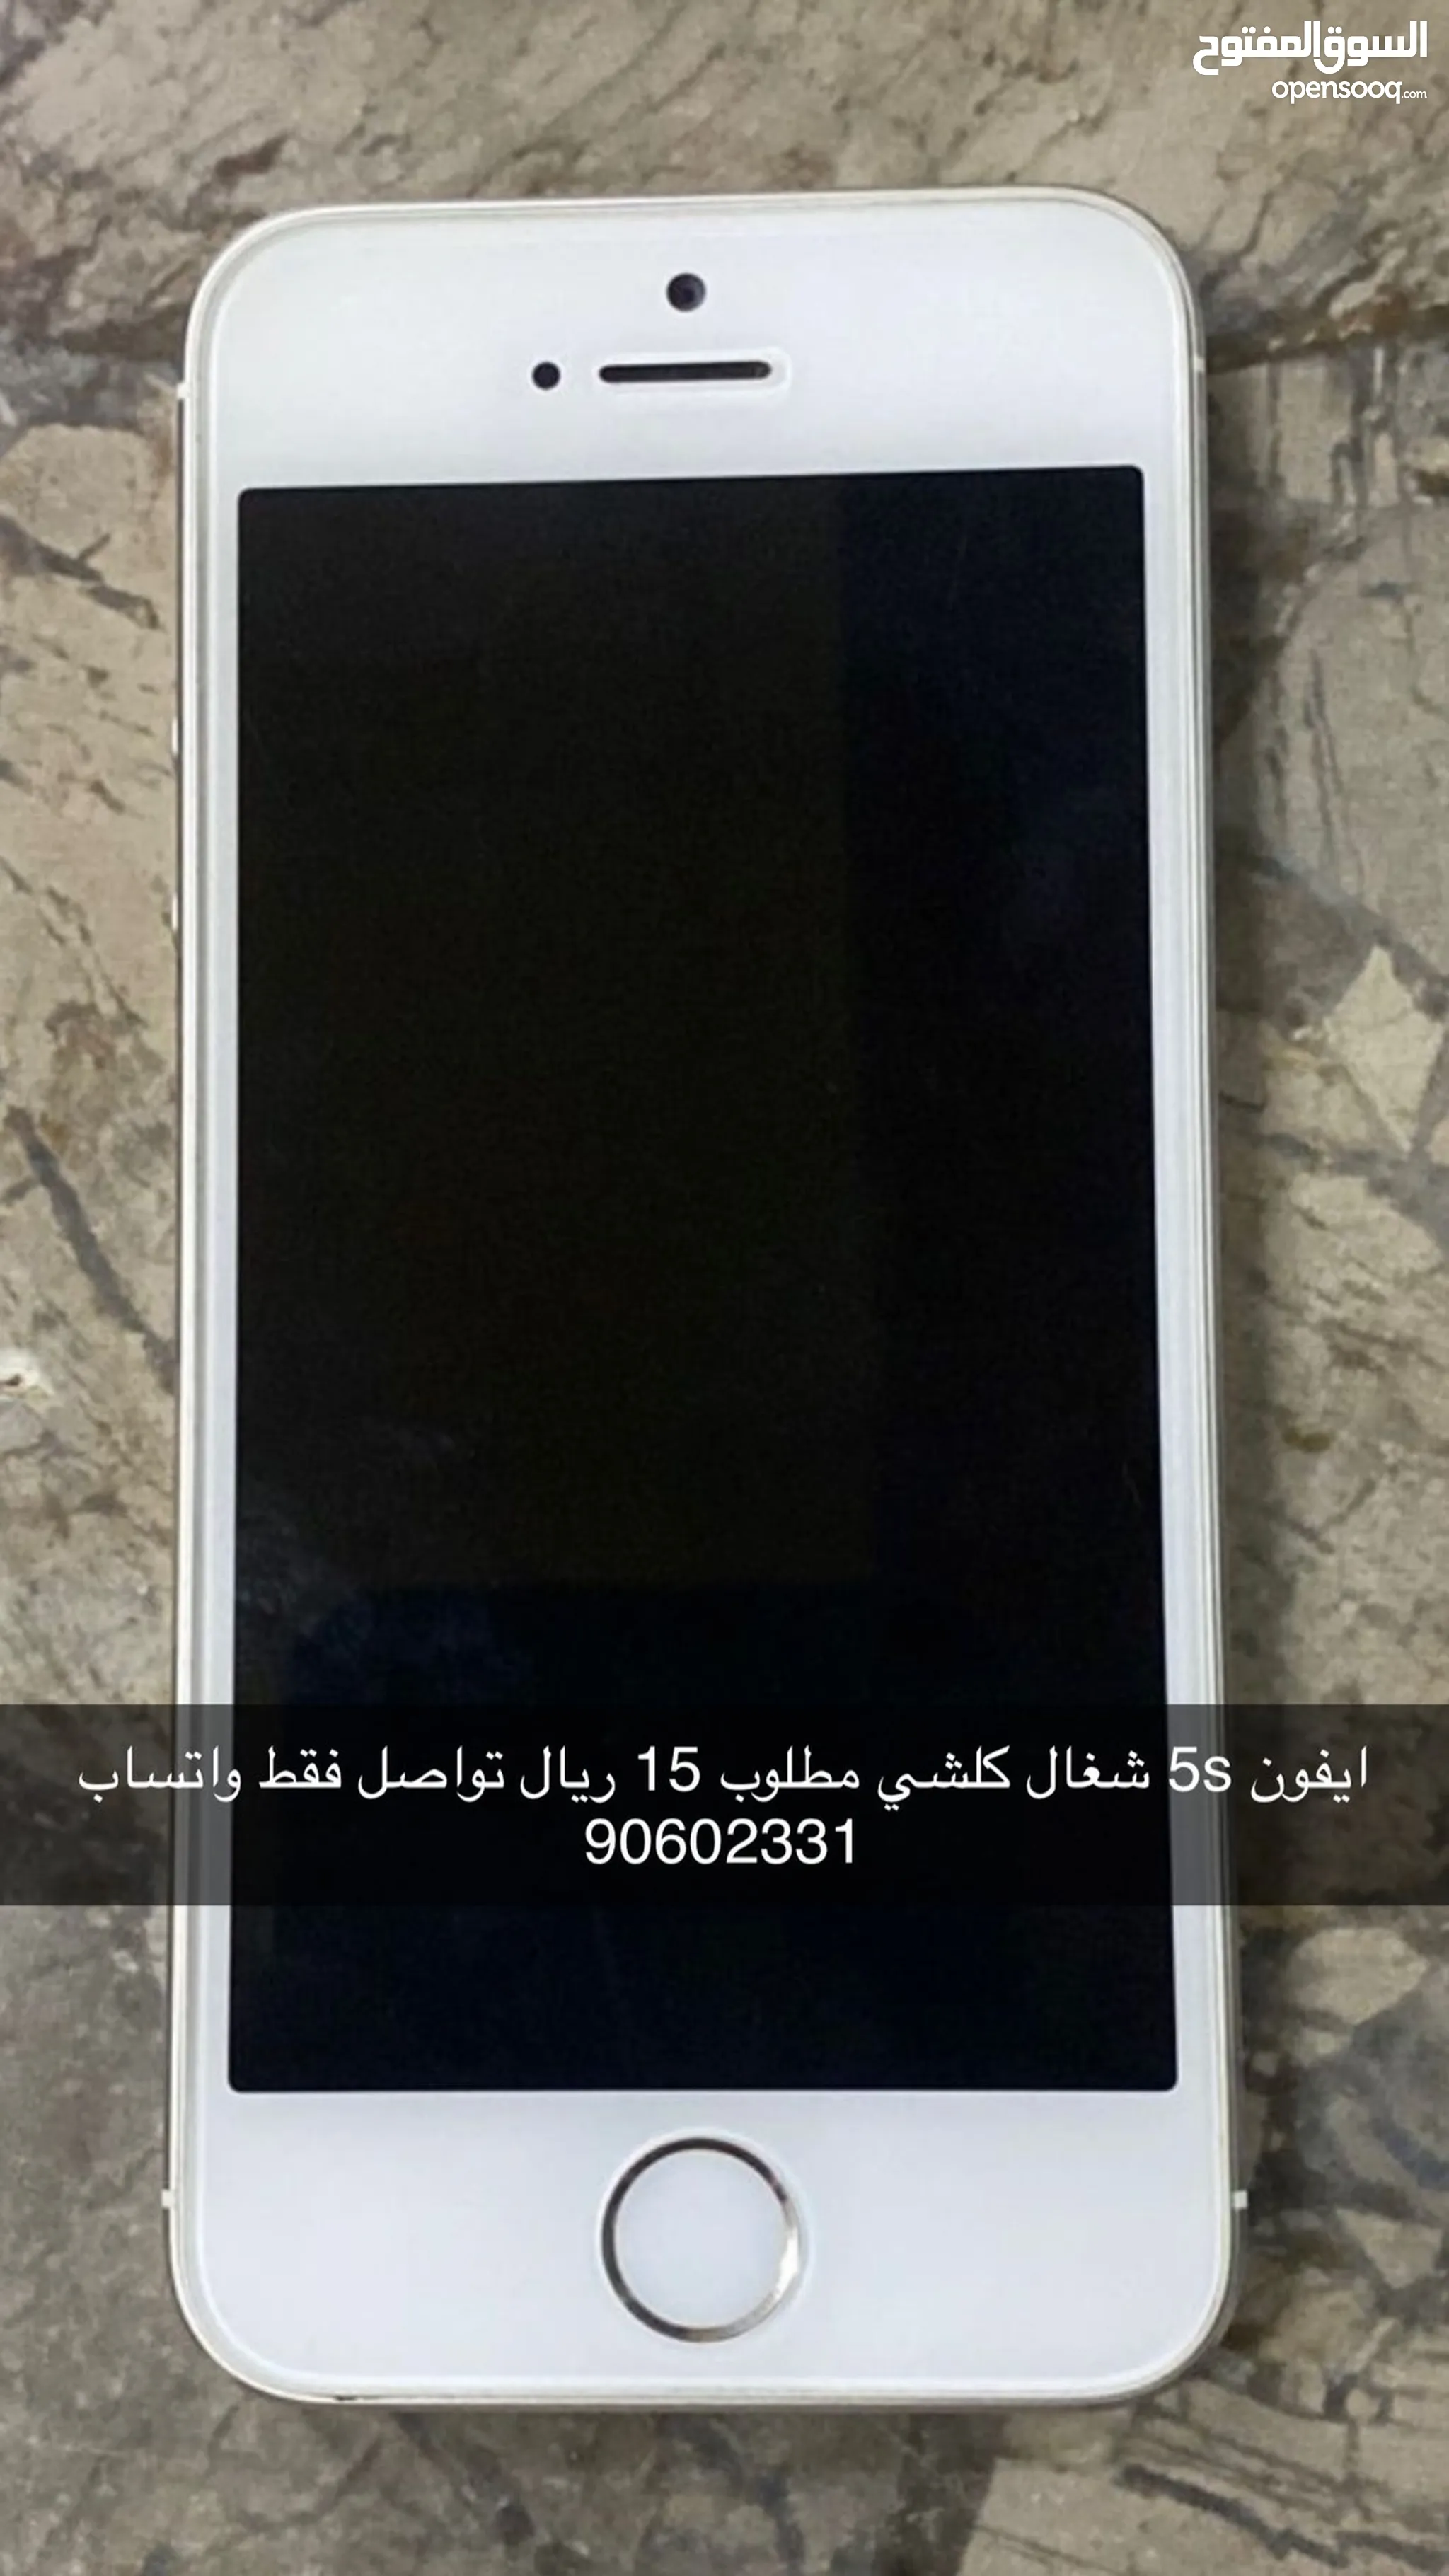 أبل ايفون 5S للبيع مستعمل : ارخص سعر أبل ايفون 5S في عُمان | السوق المفتوح